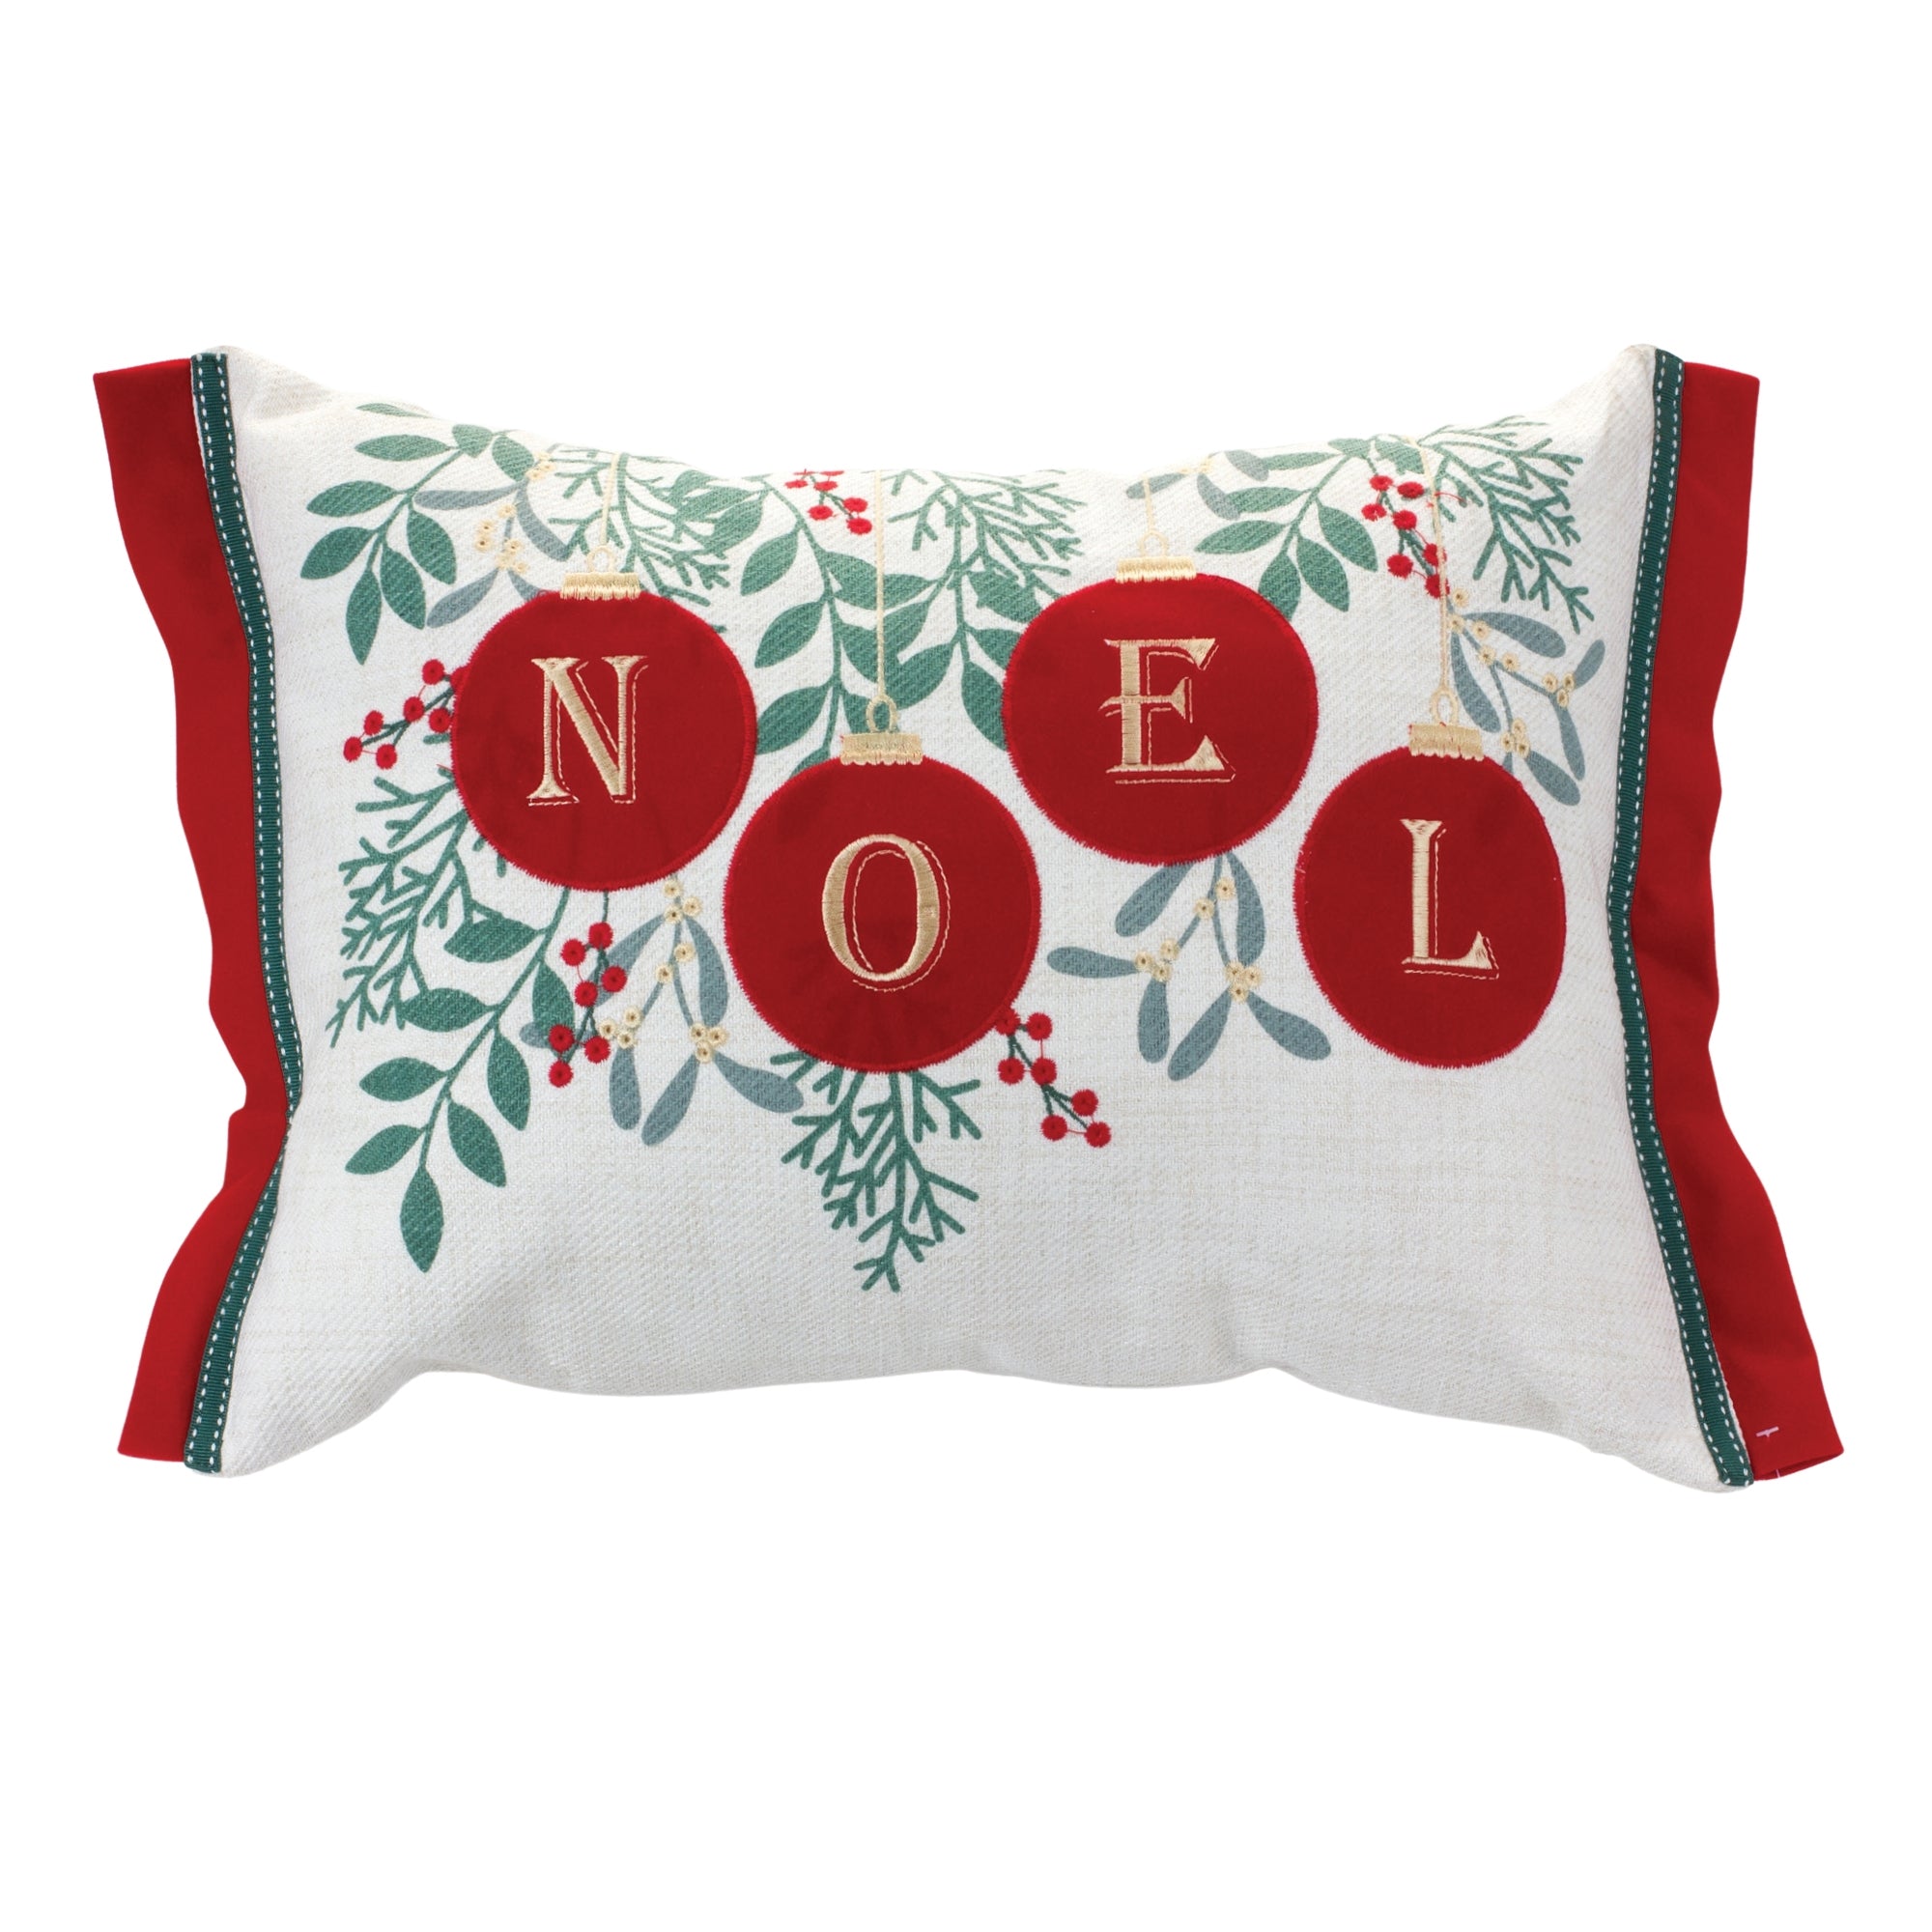 Noel Ornaments Throw Pillow 19"L